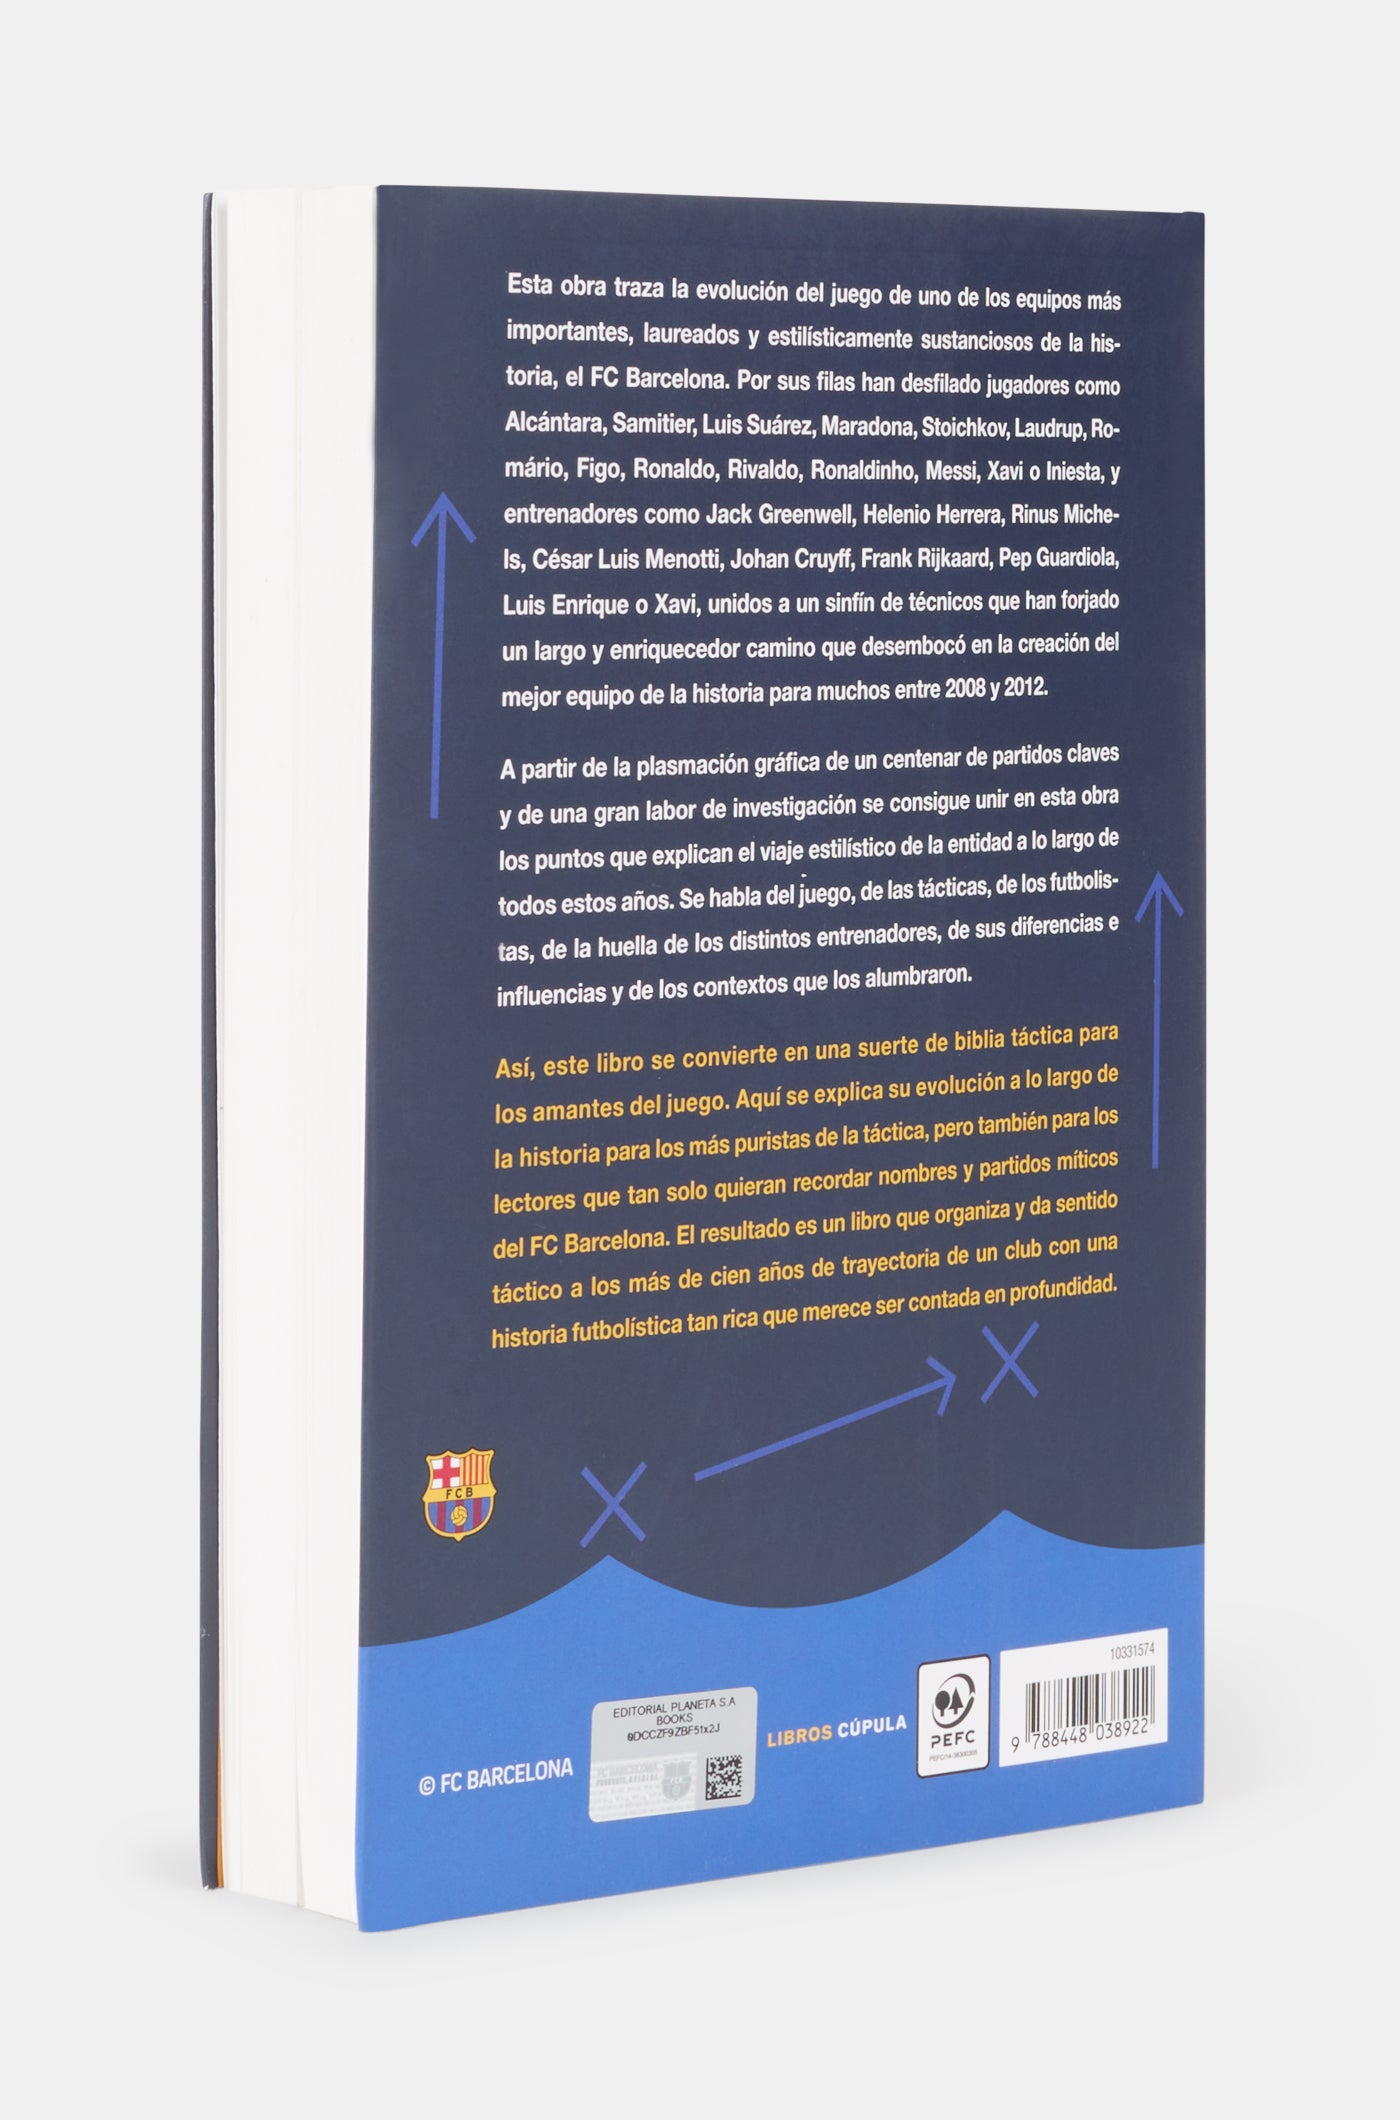 Book "El estilo del Barça" - Spanish